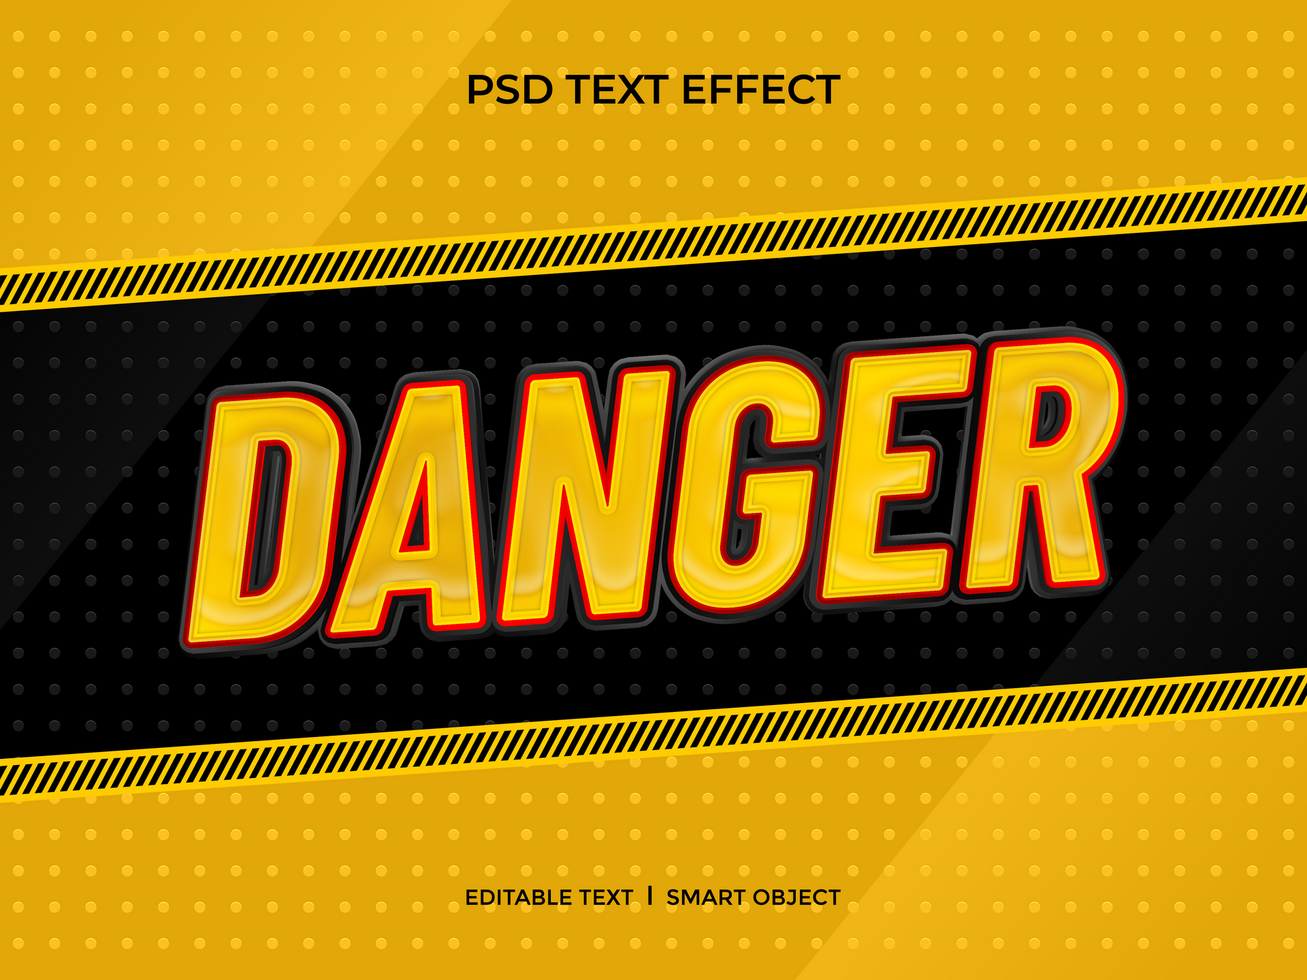 Danger text effect psd